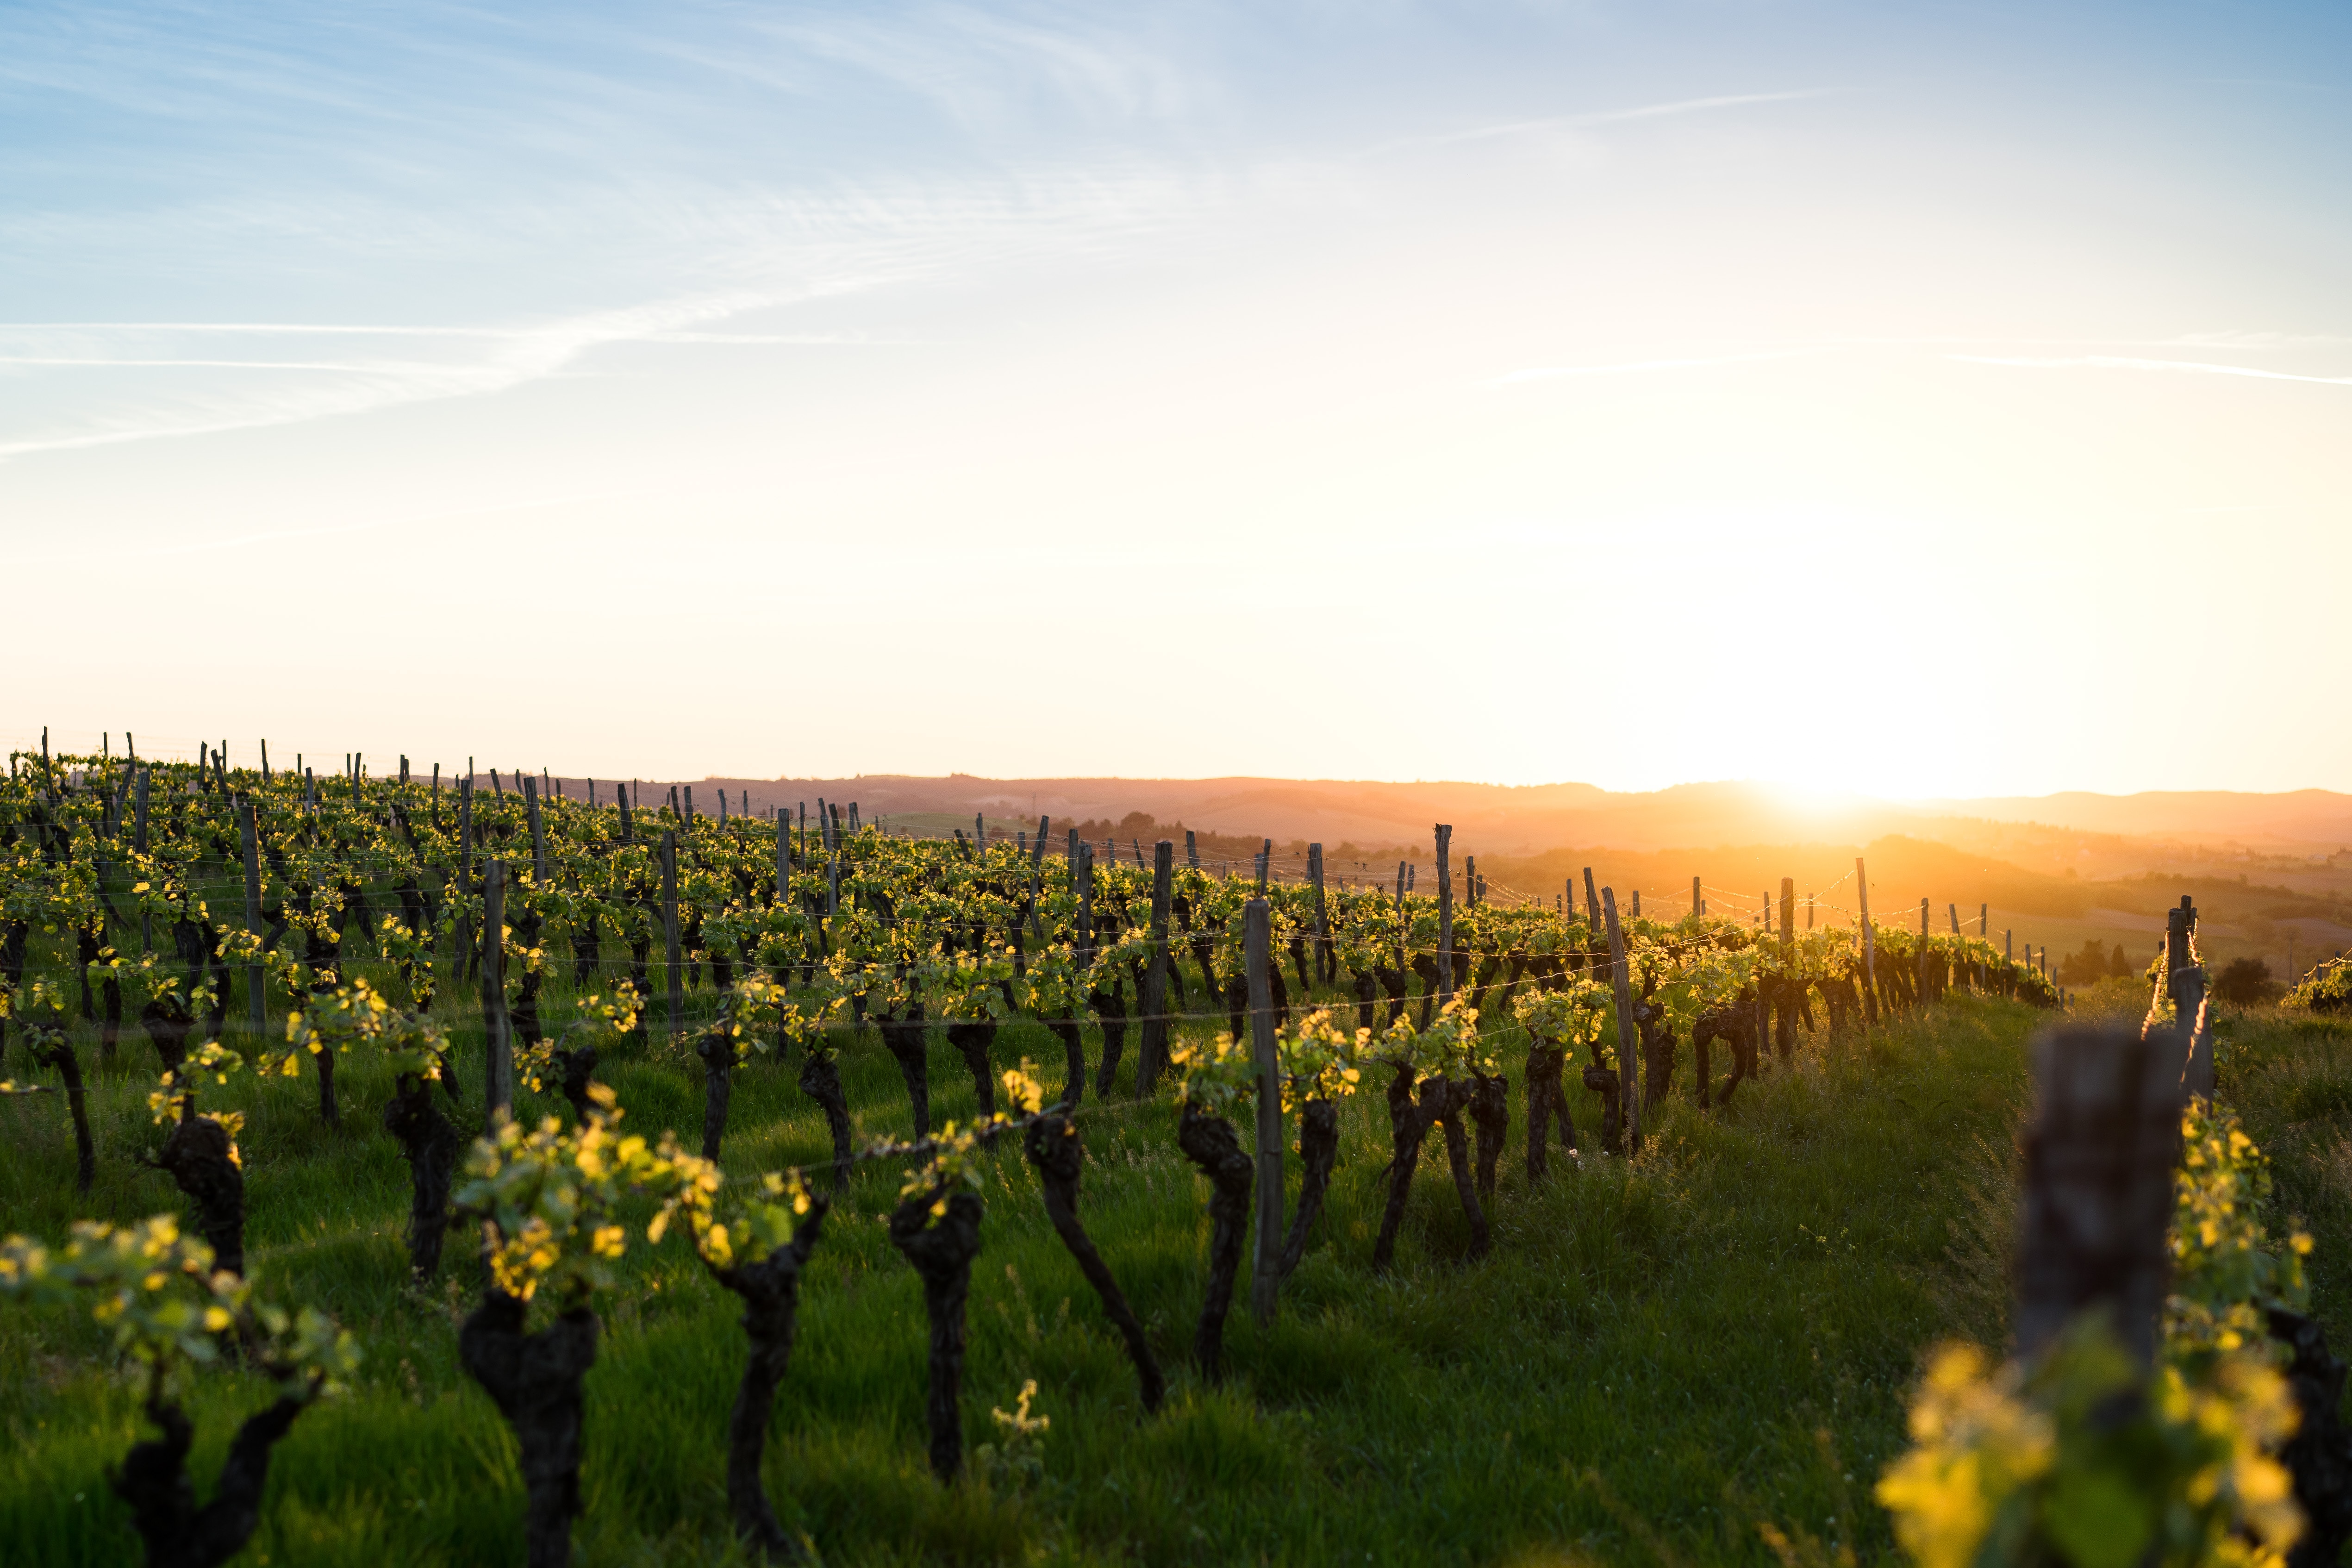 Phtographie de vignes en France